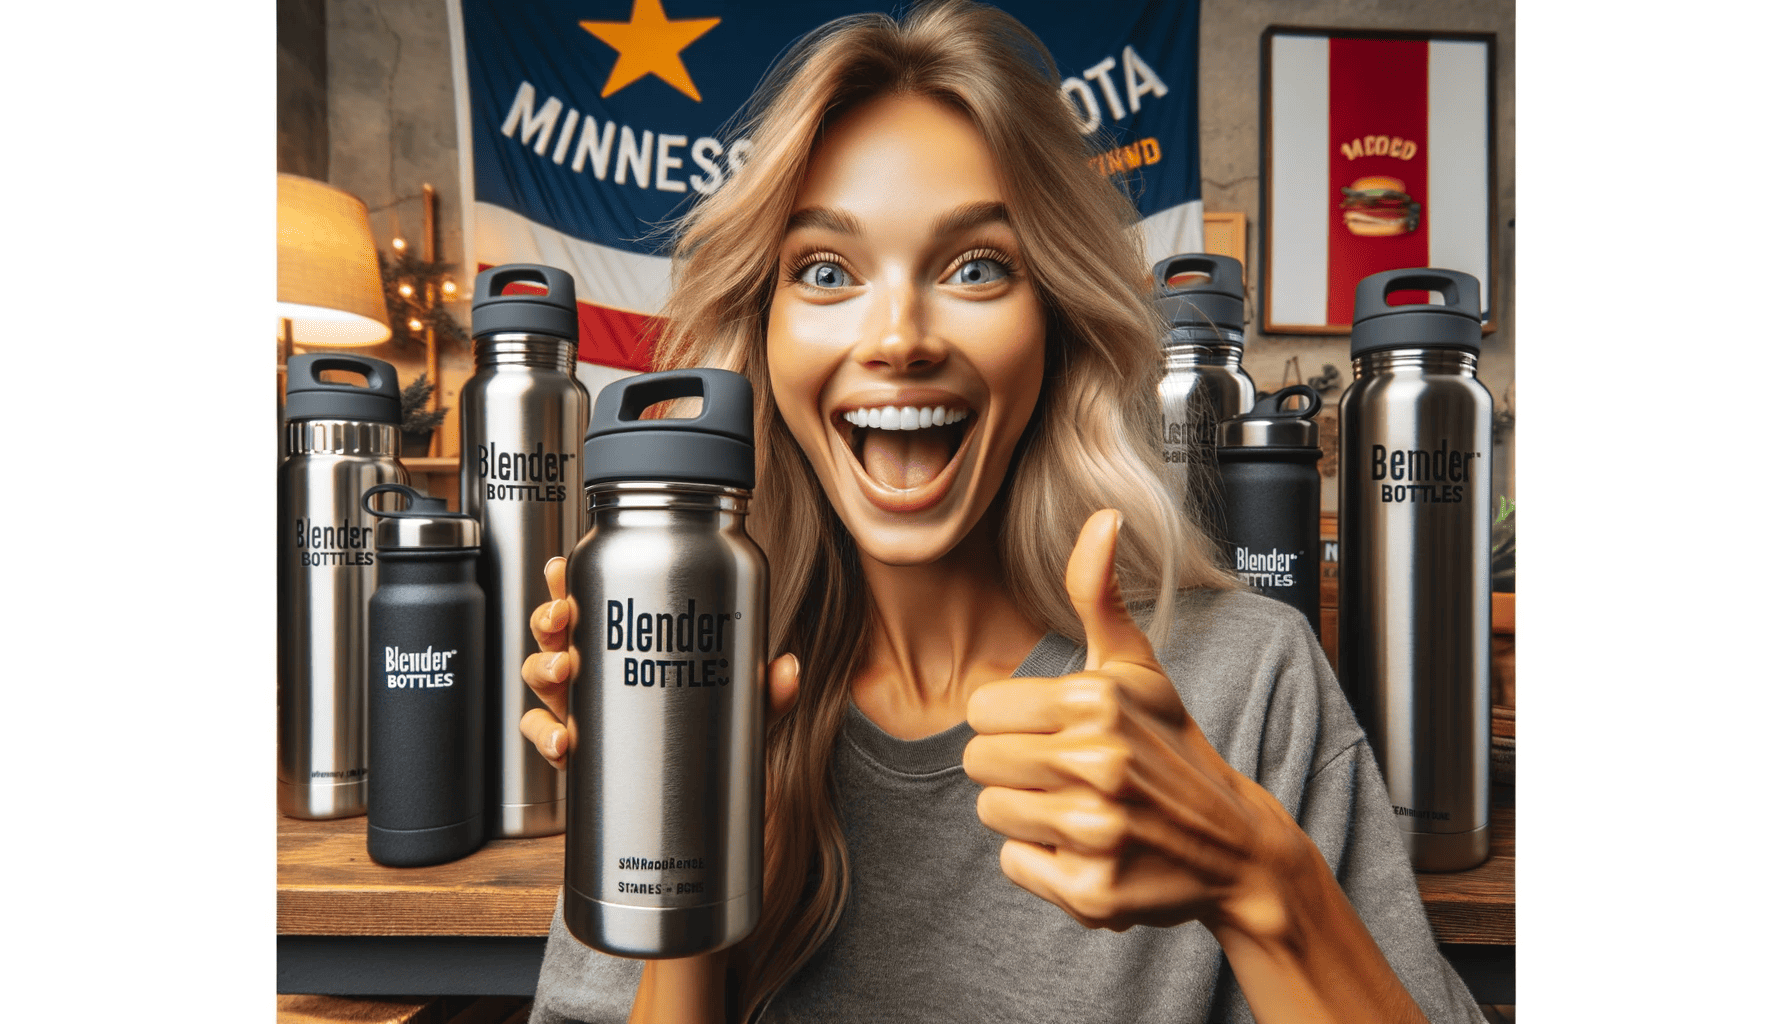 Top Blender Bottles for Minnesota Living